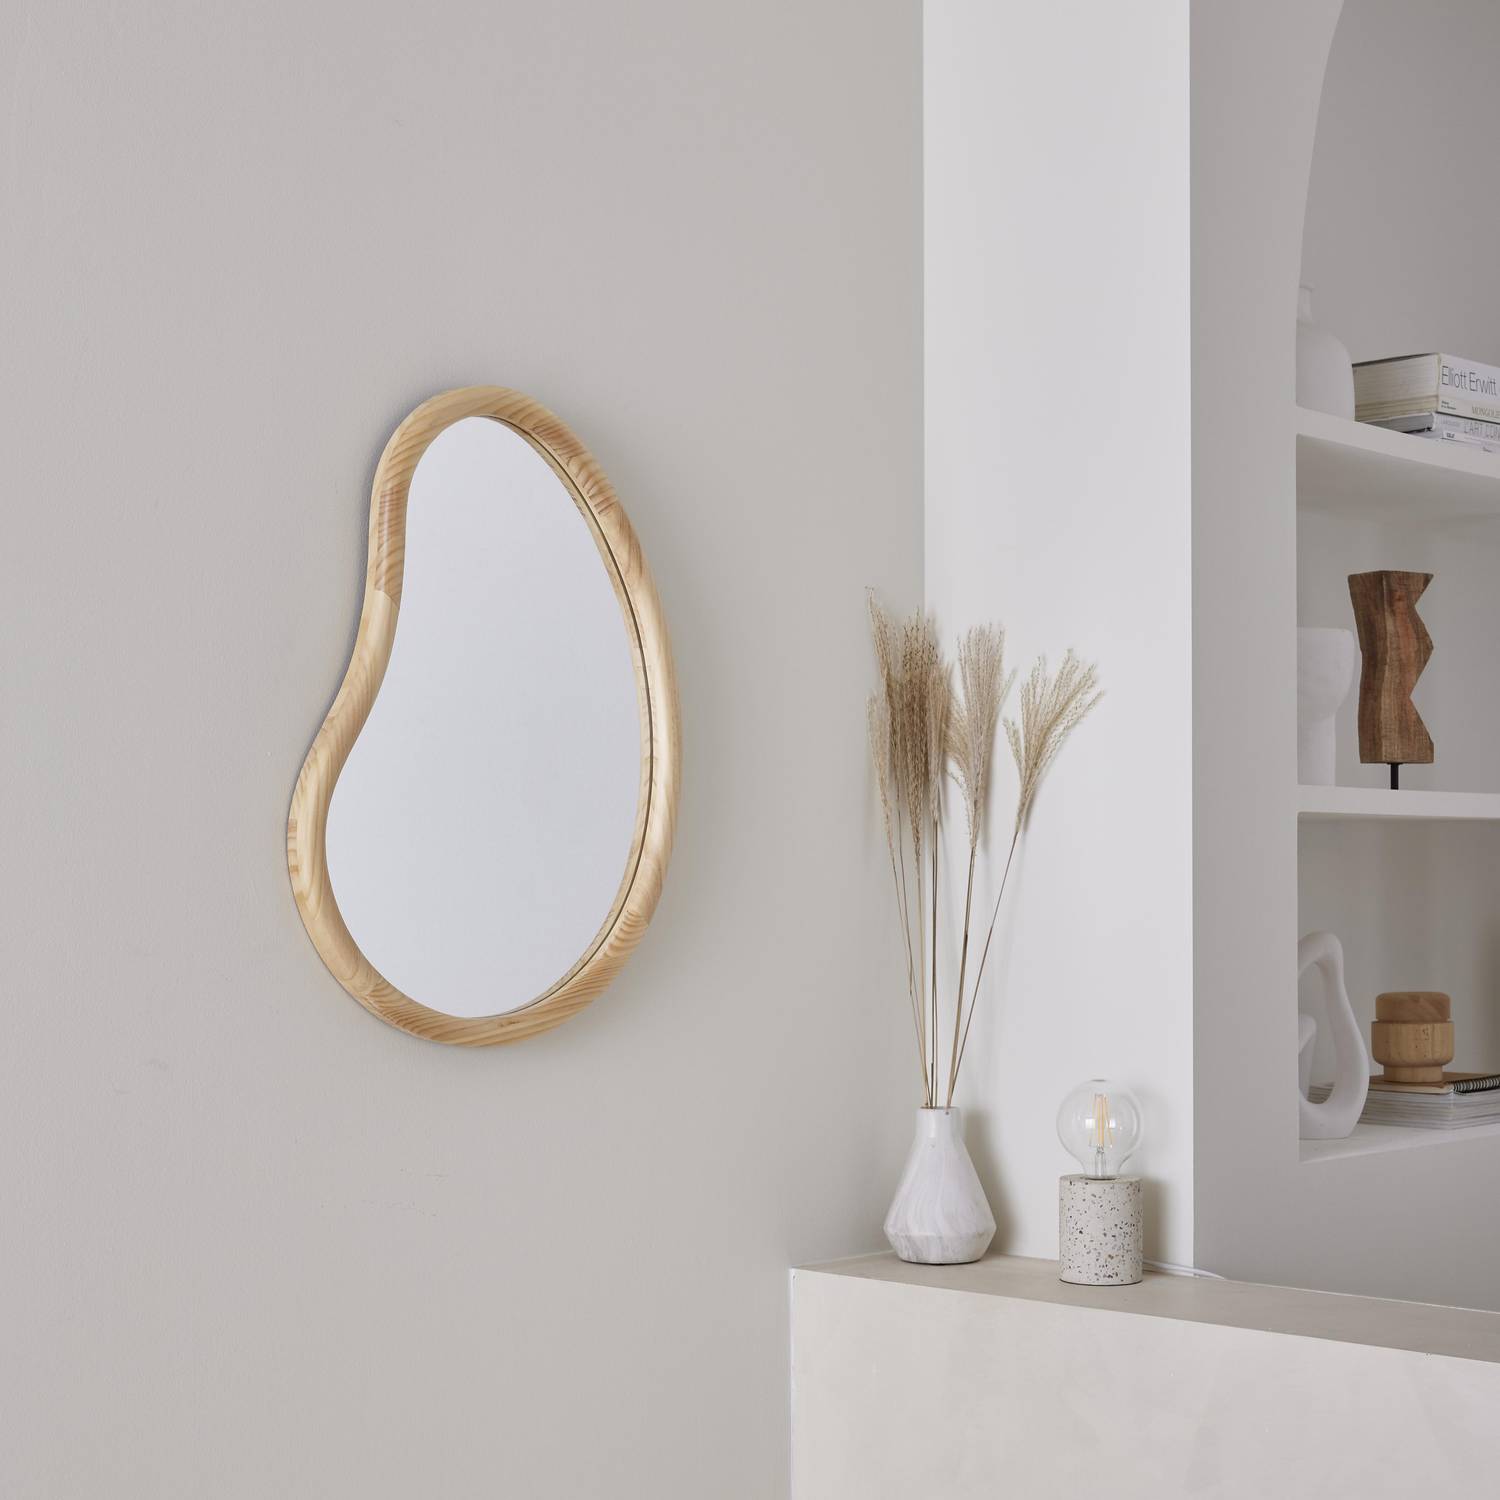 Miroir organique en bois de sapin 65cm épaisseur 3cm coloris naturel idéal entrée, chambre ou salle de bain Photo1